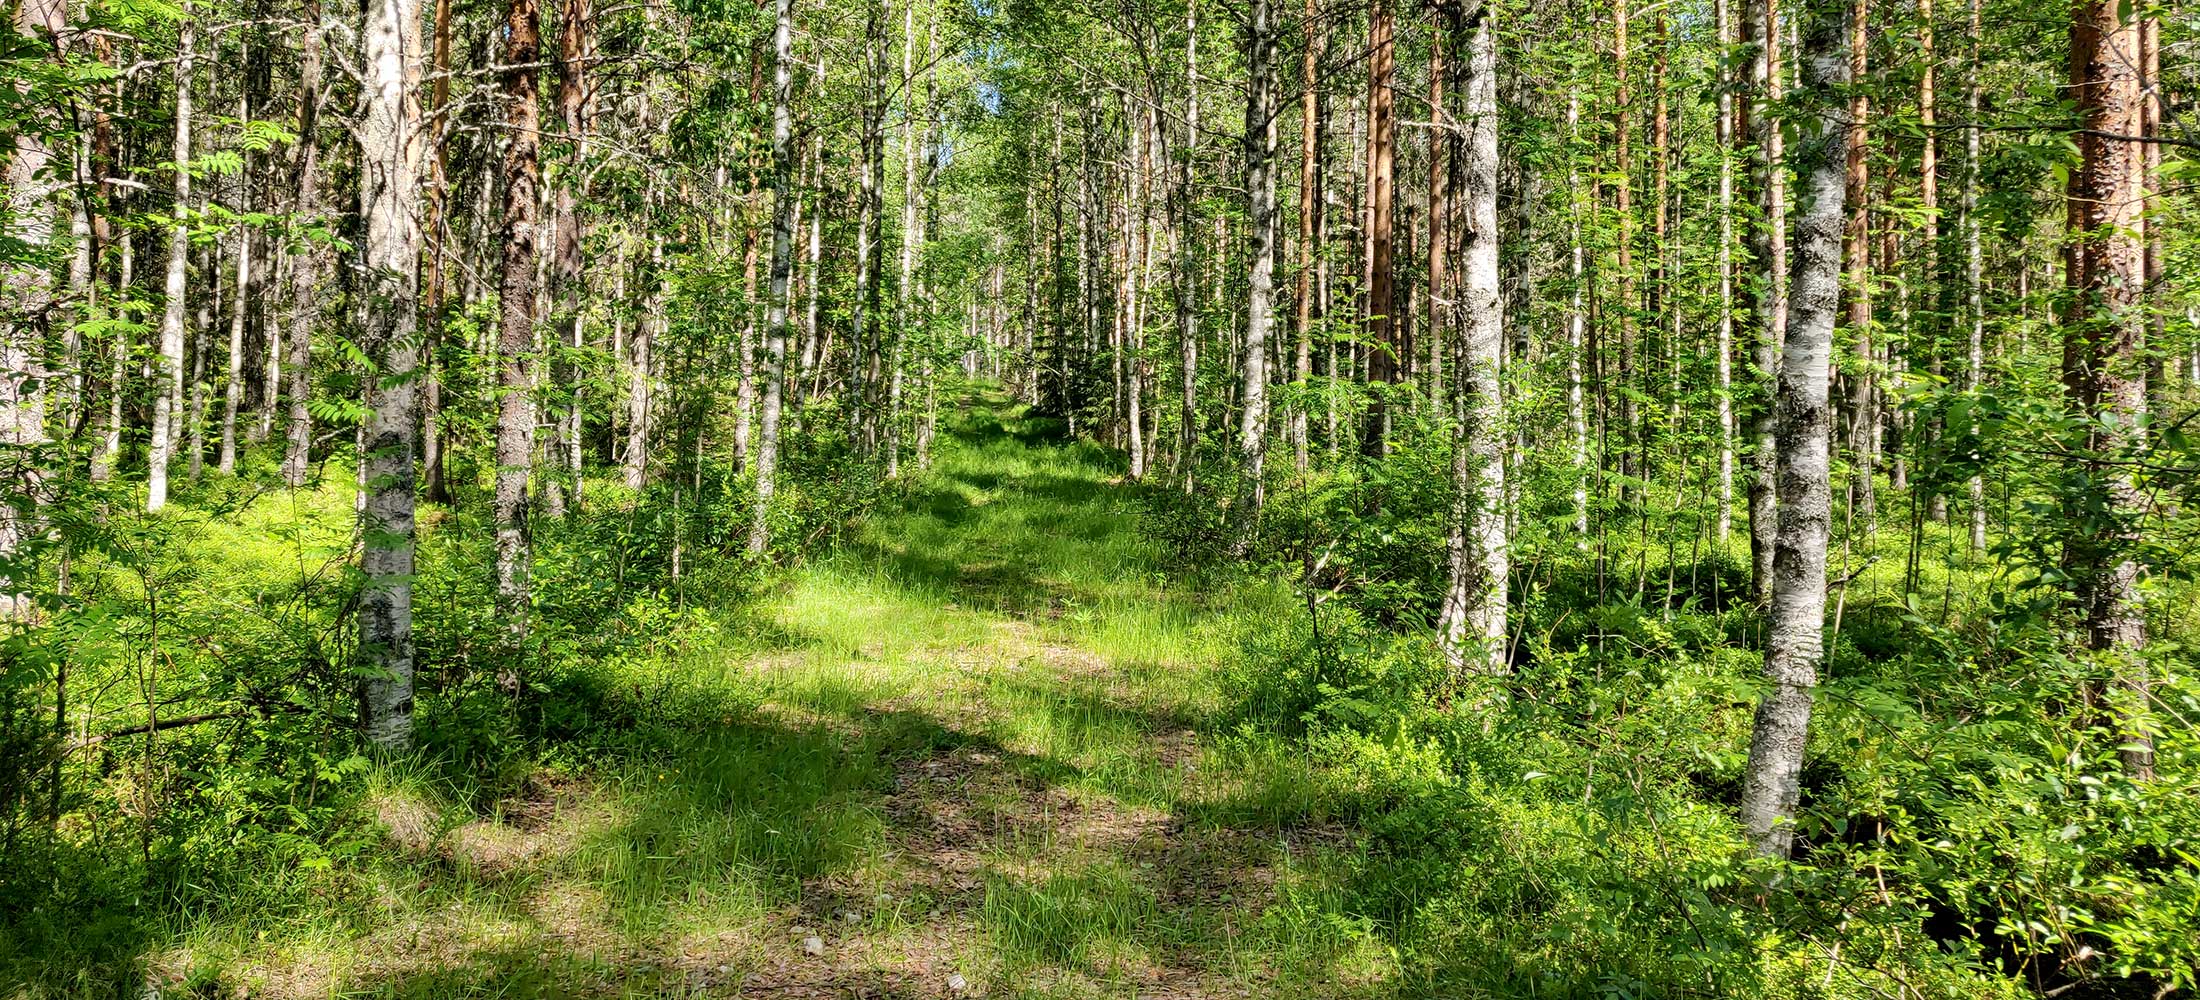 Kuopion kansalaisopisto, luennot ja tapahtumat. Kuvassa koivuinen metsämaisema, keskellä heinittynyt tie.